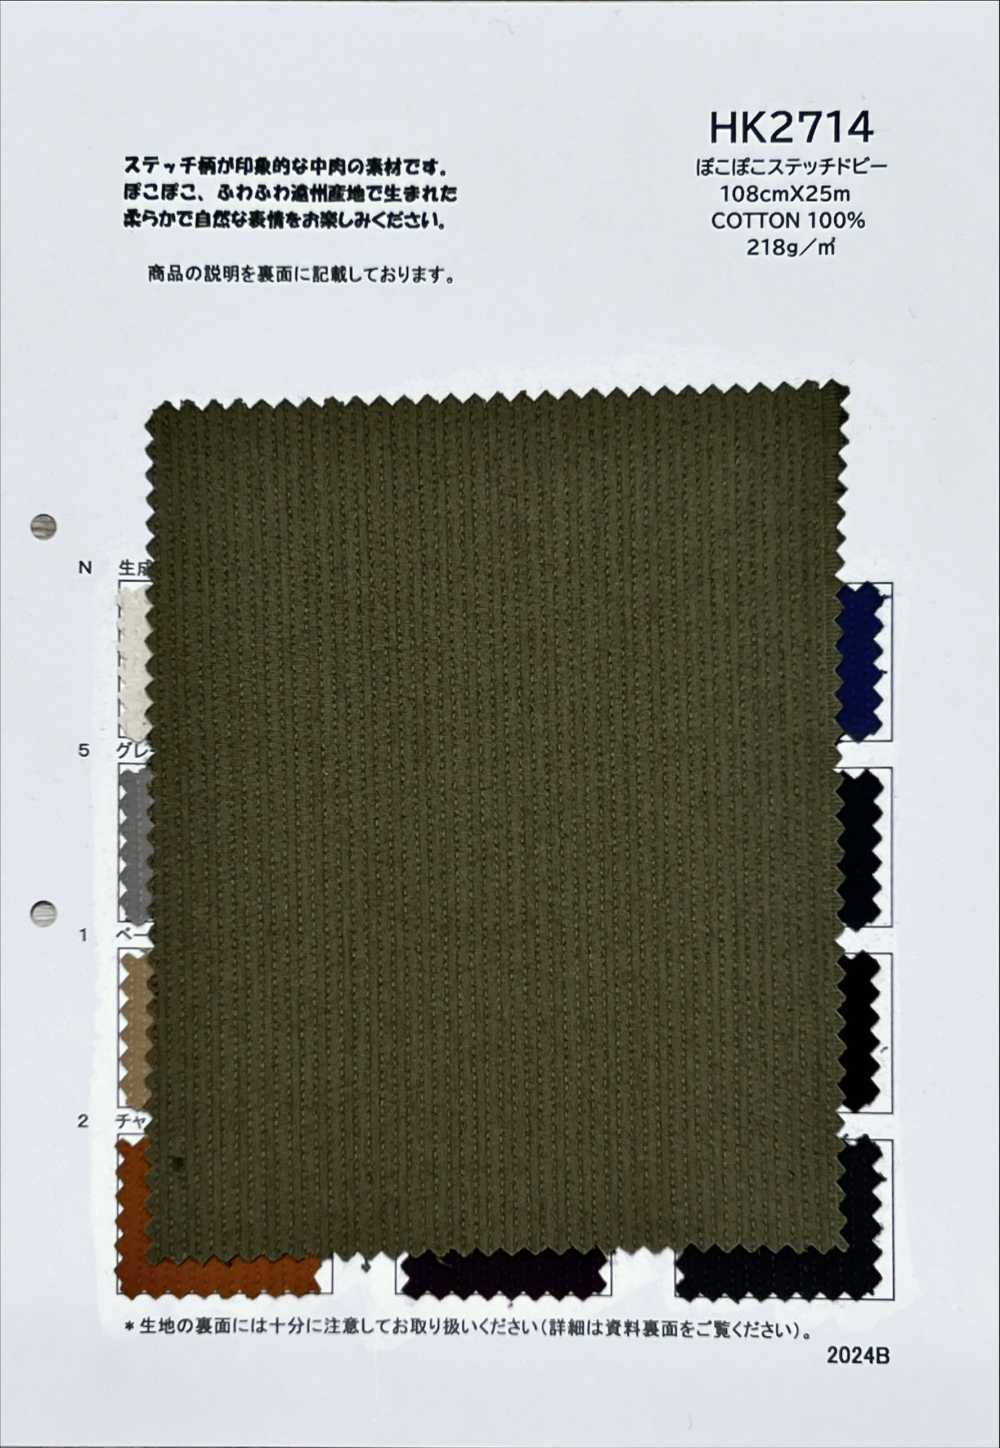 HK2714 Pokopoko Stich Dobby[Textilgewebe] KOYAMA